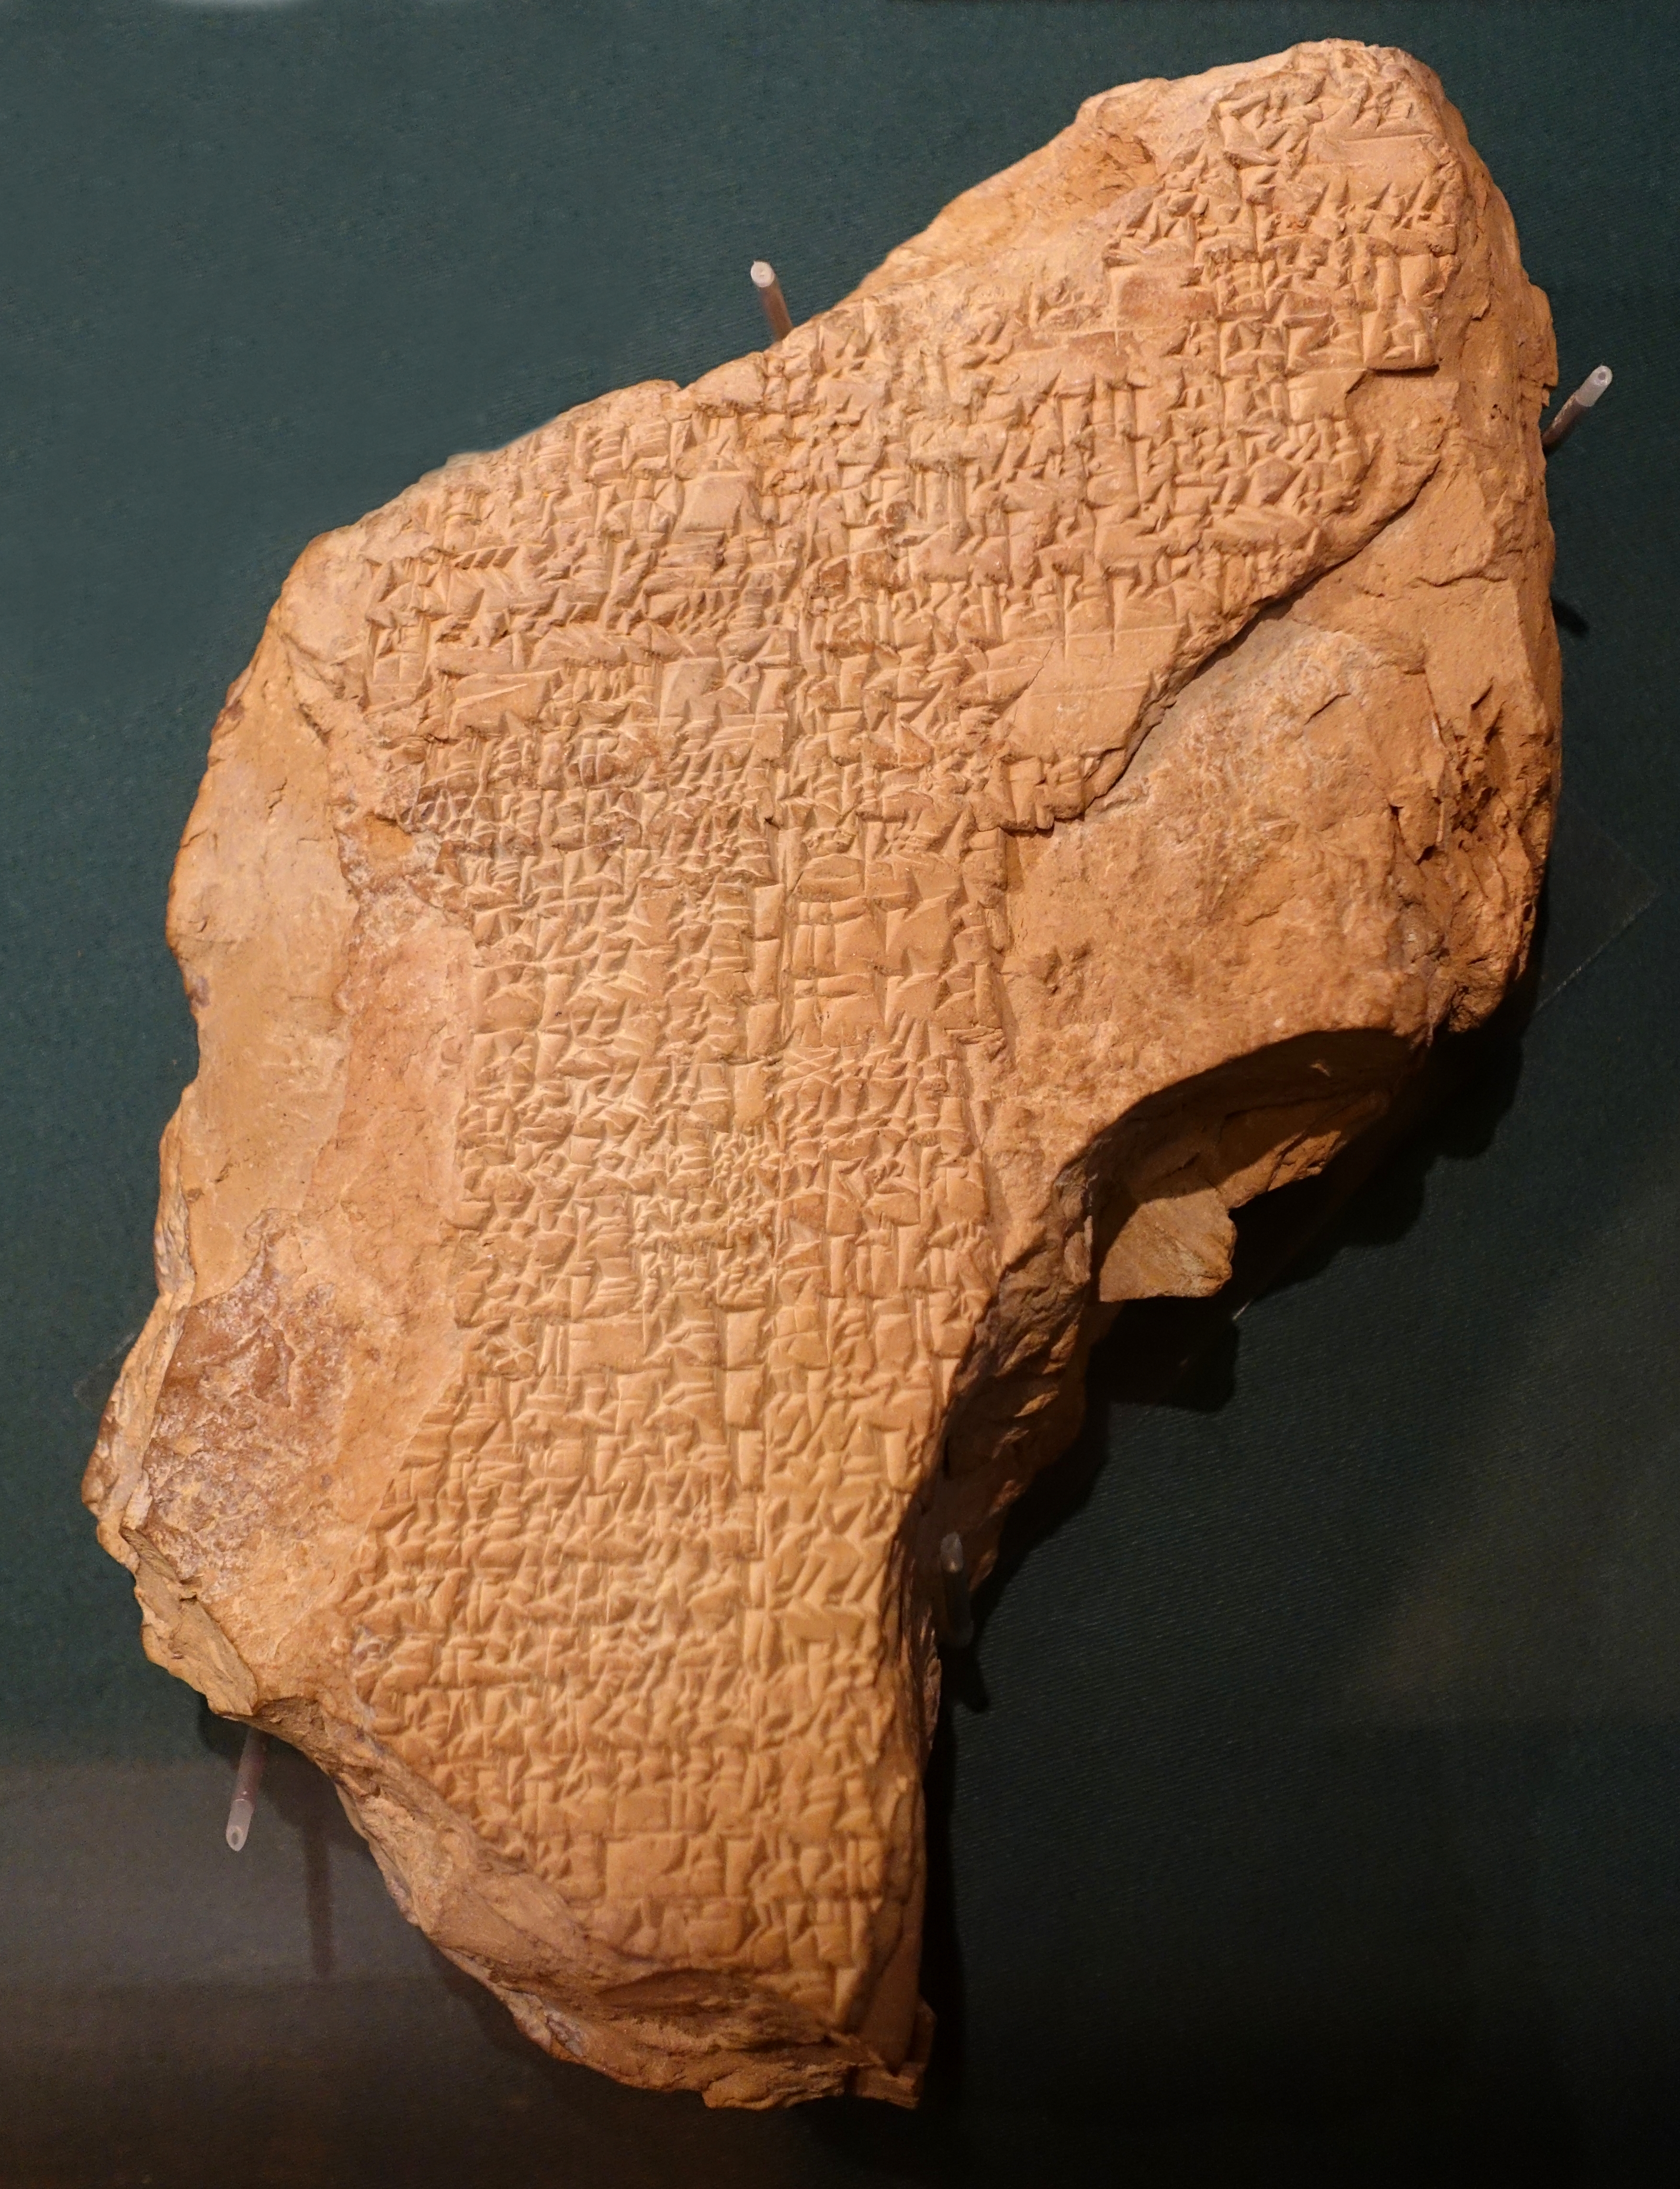 Ancient Text, Enheduanna, Poem inscribed on tablet